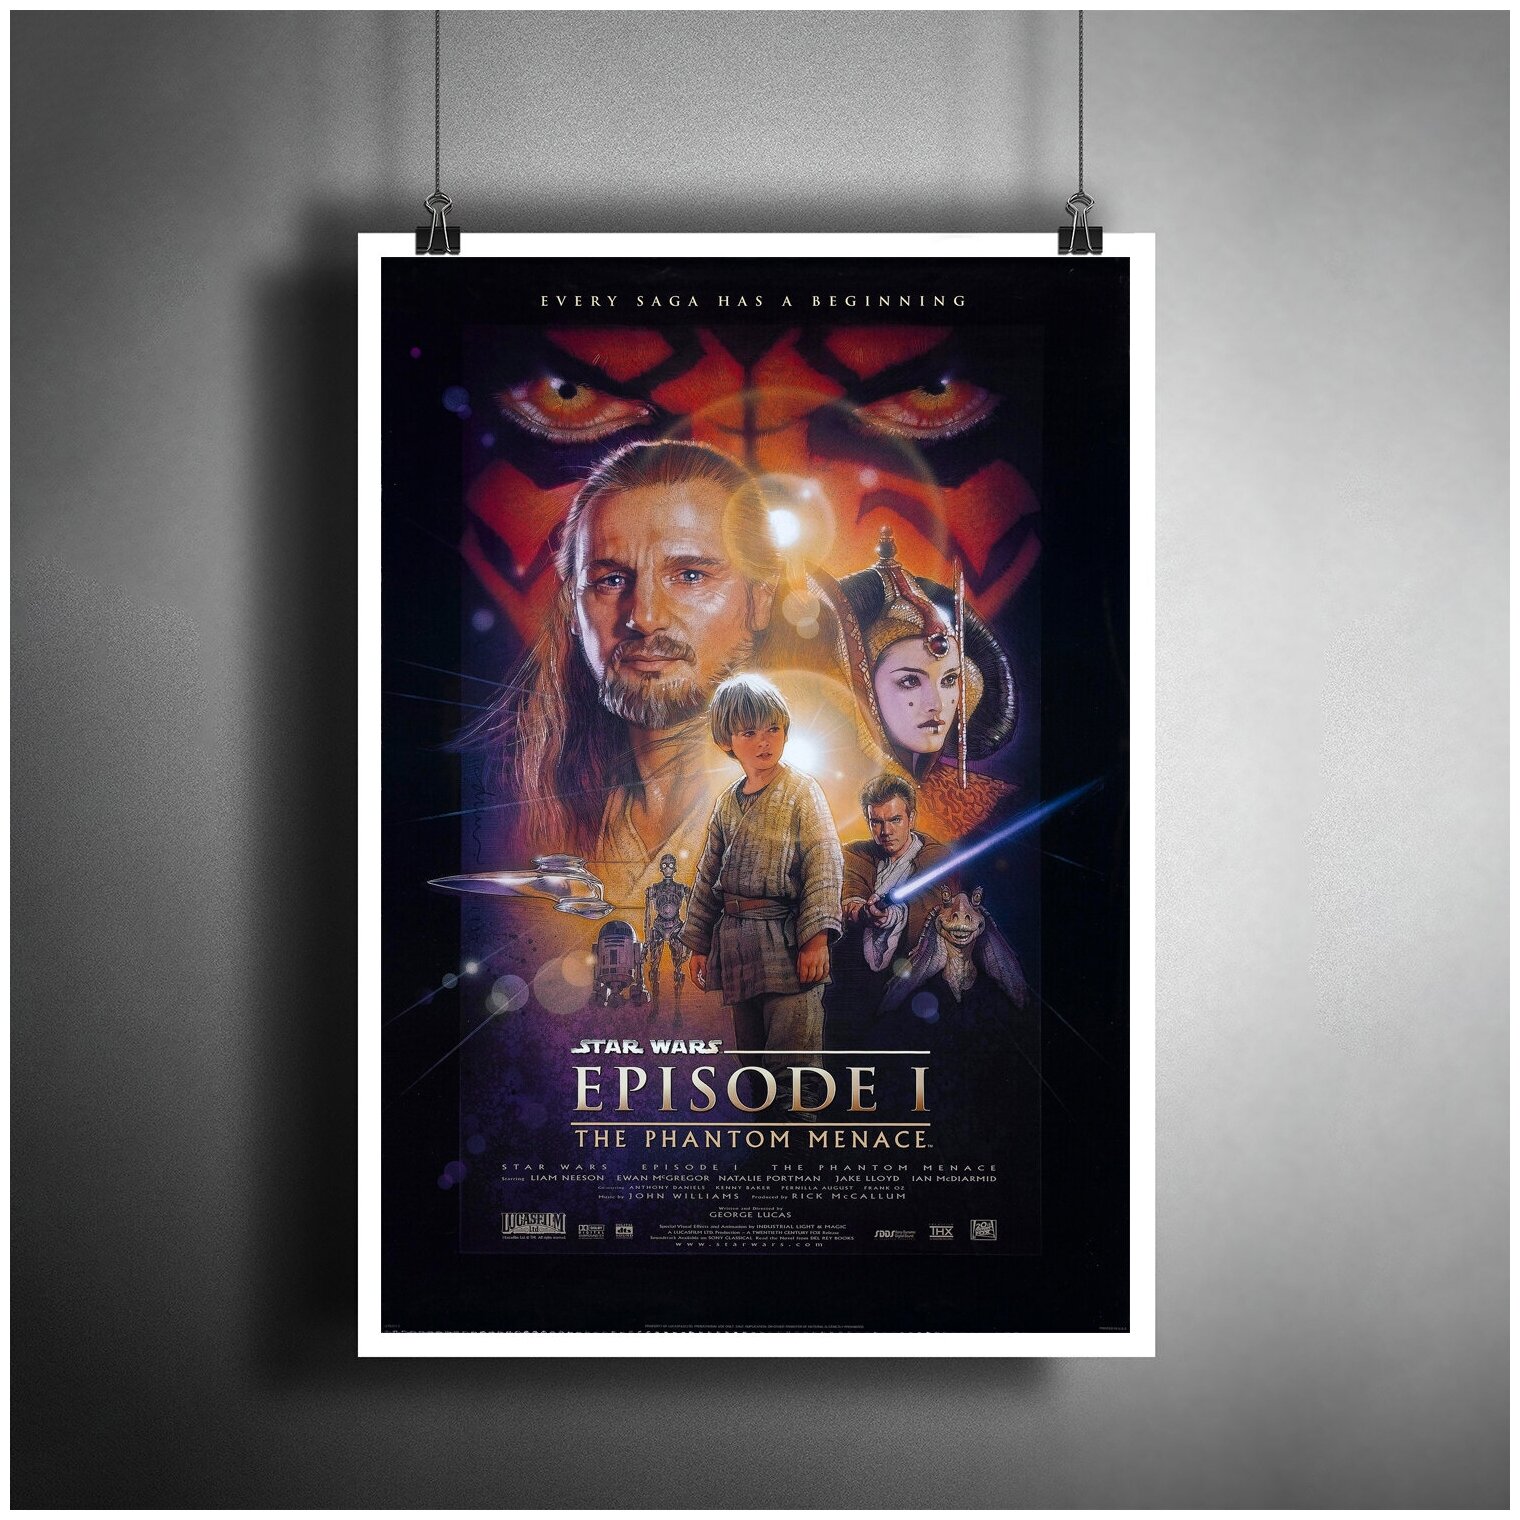 Постер плакат для интерьера "Звёздные войны: Эпизод 1. Star Wars"/ Декор дома, офиса, комнаты A3 (297 x 420 мм)